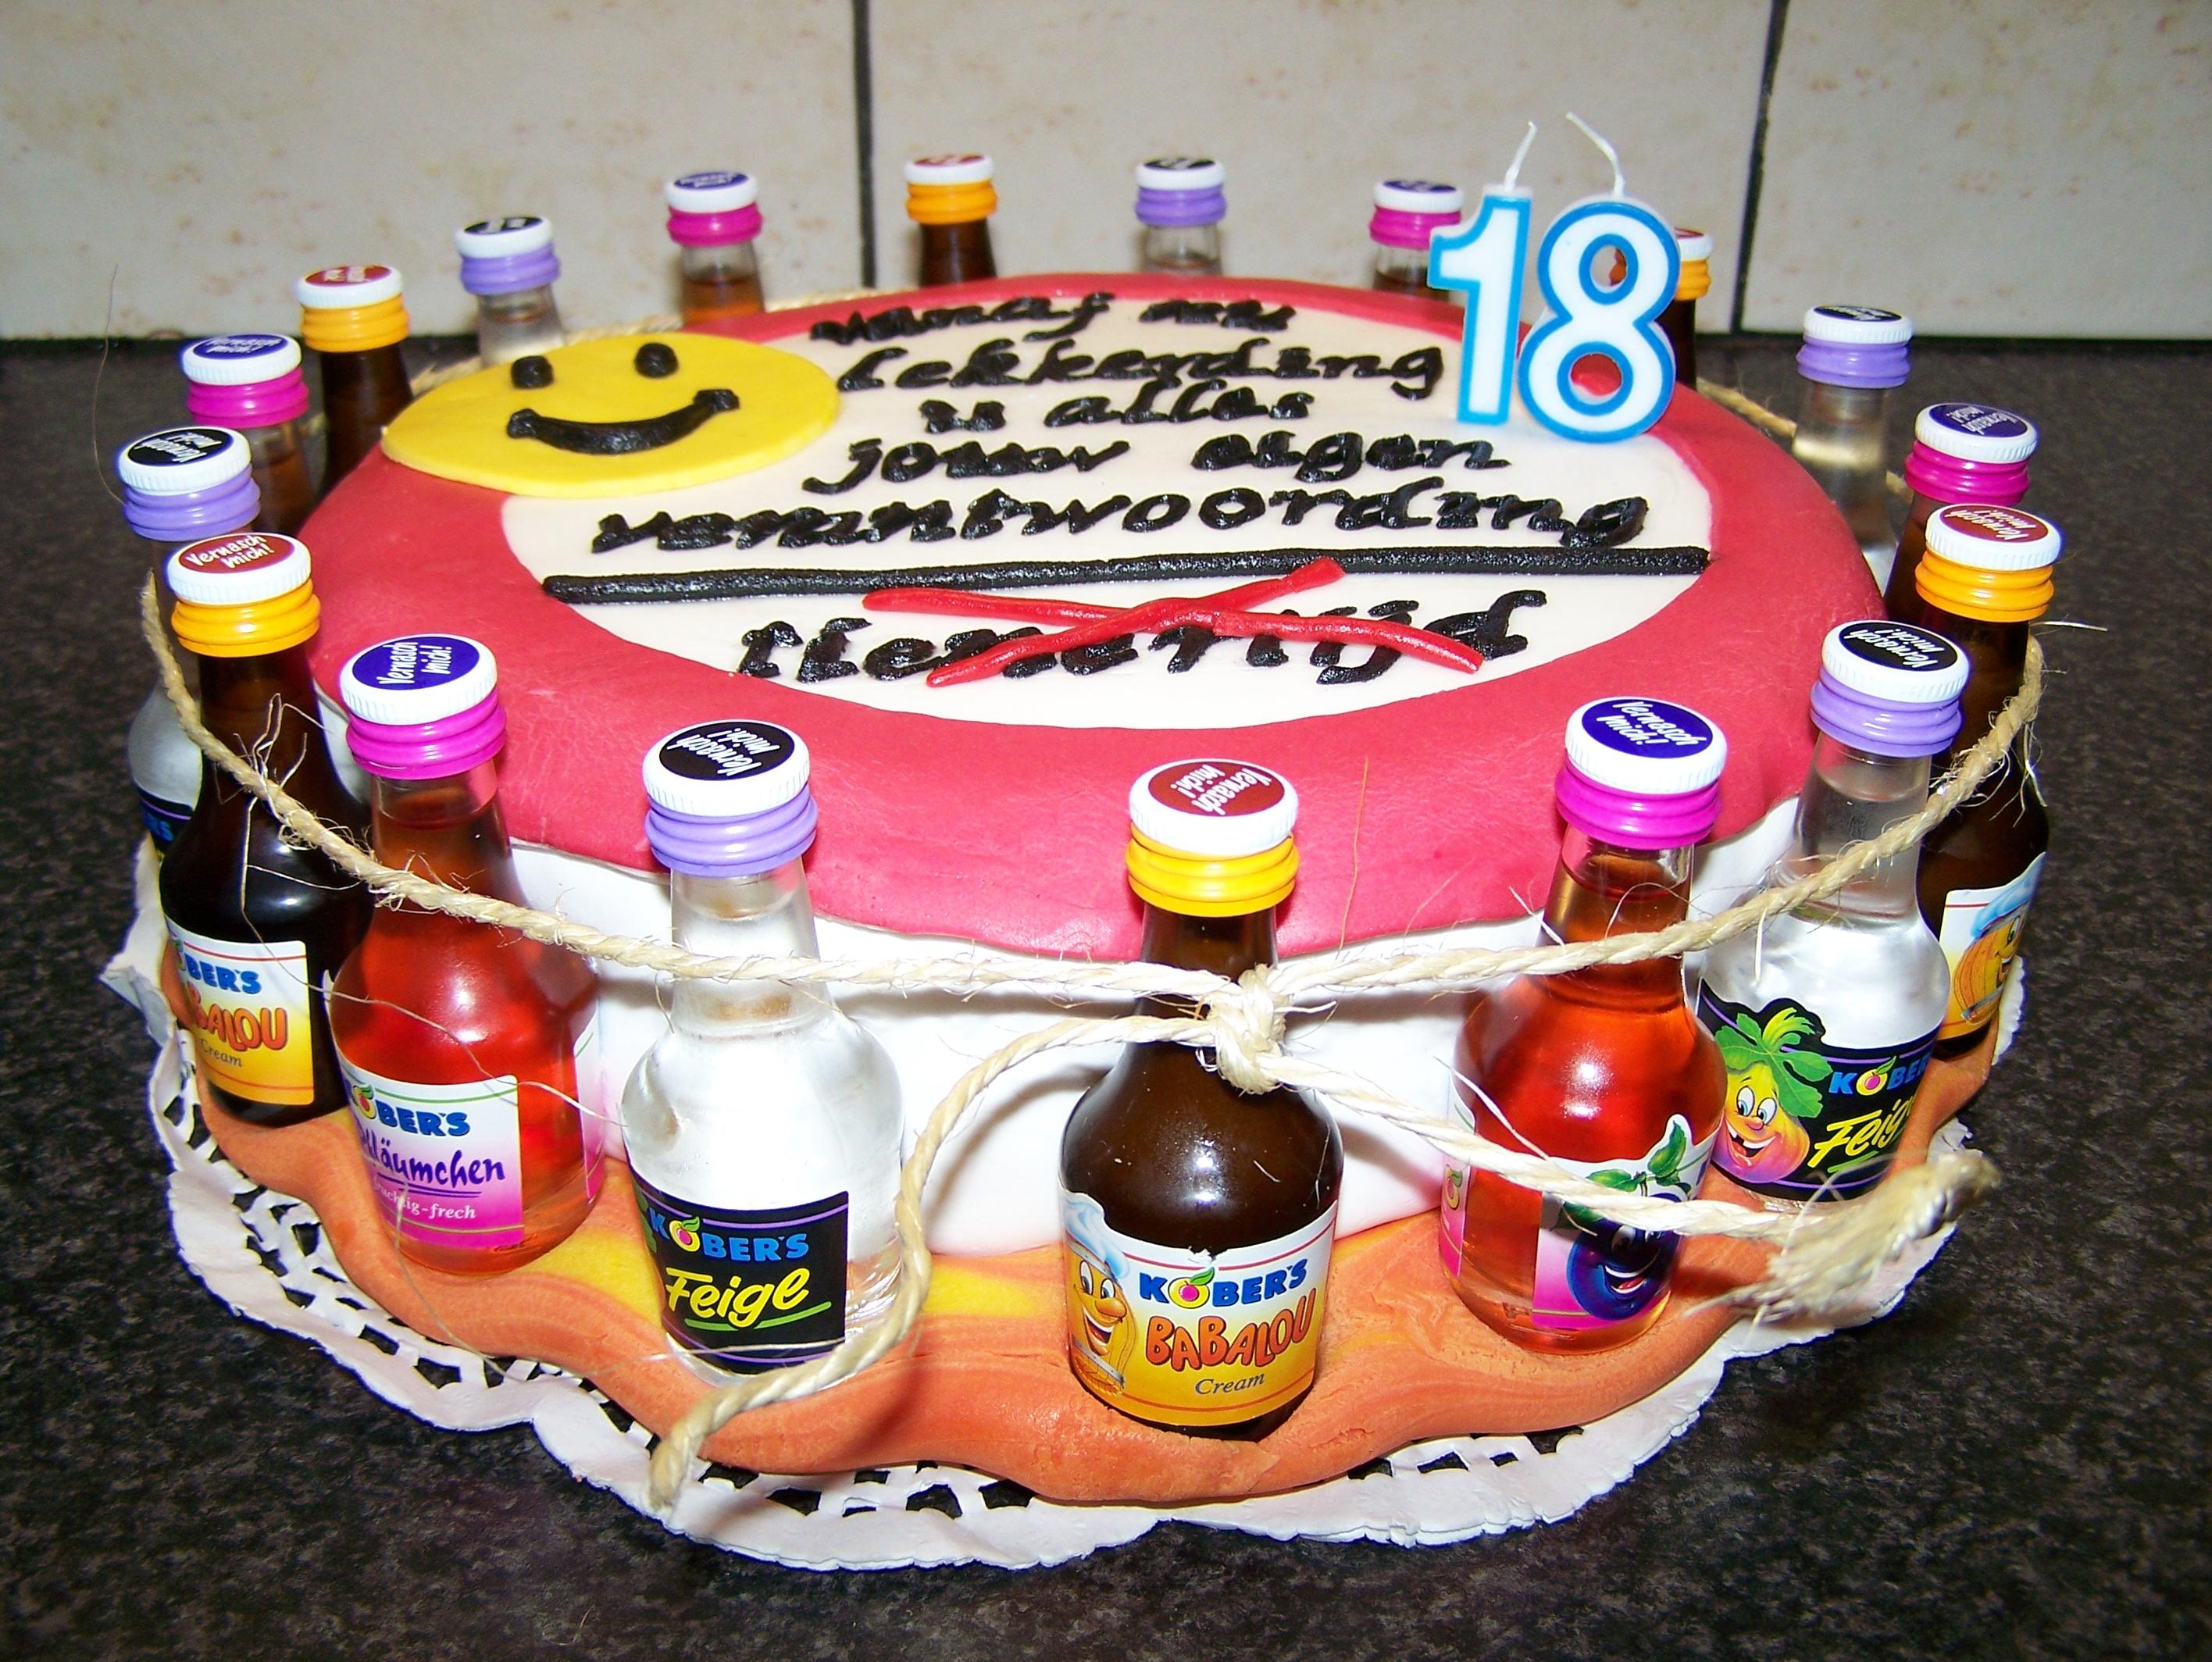 Robby's Torte zum 18. Geburtstag - Rezept Gesendet von HOCI